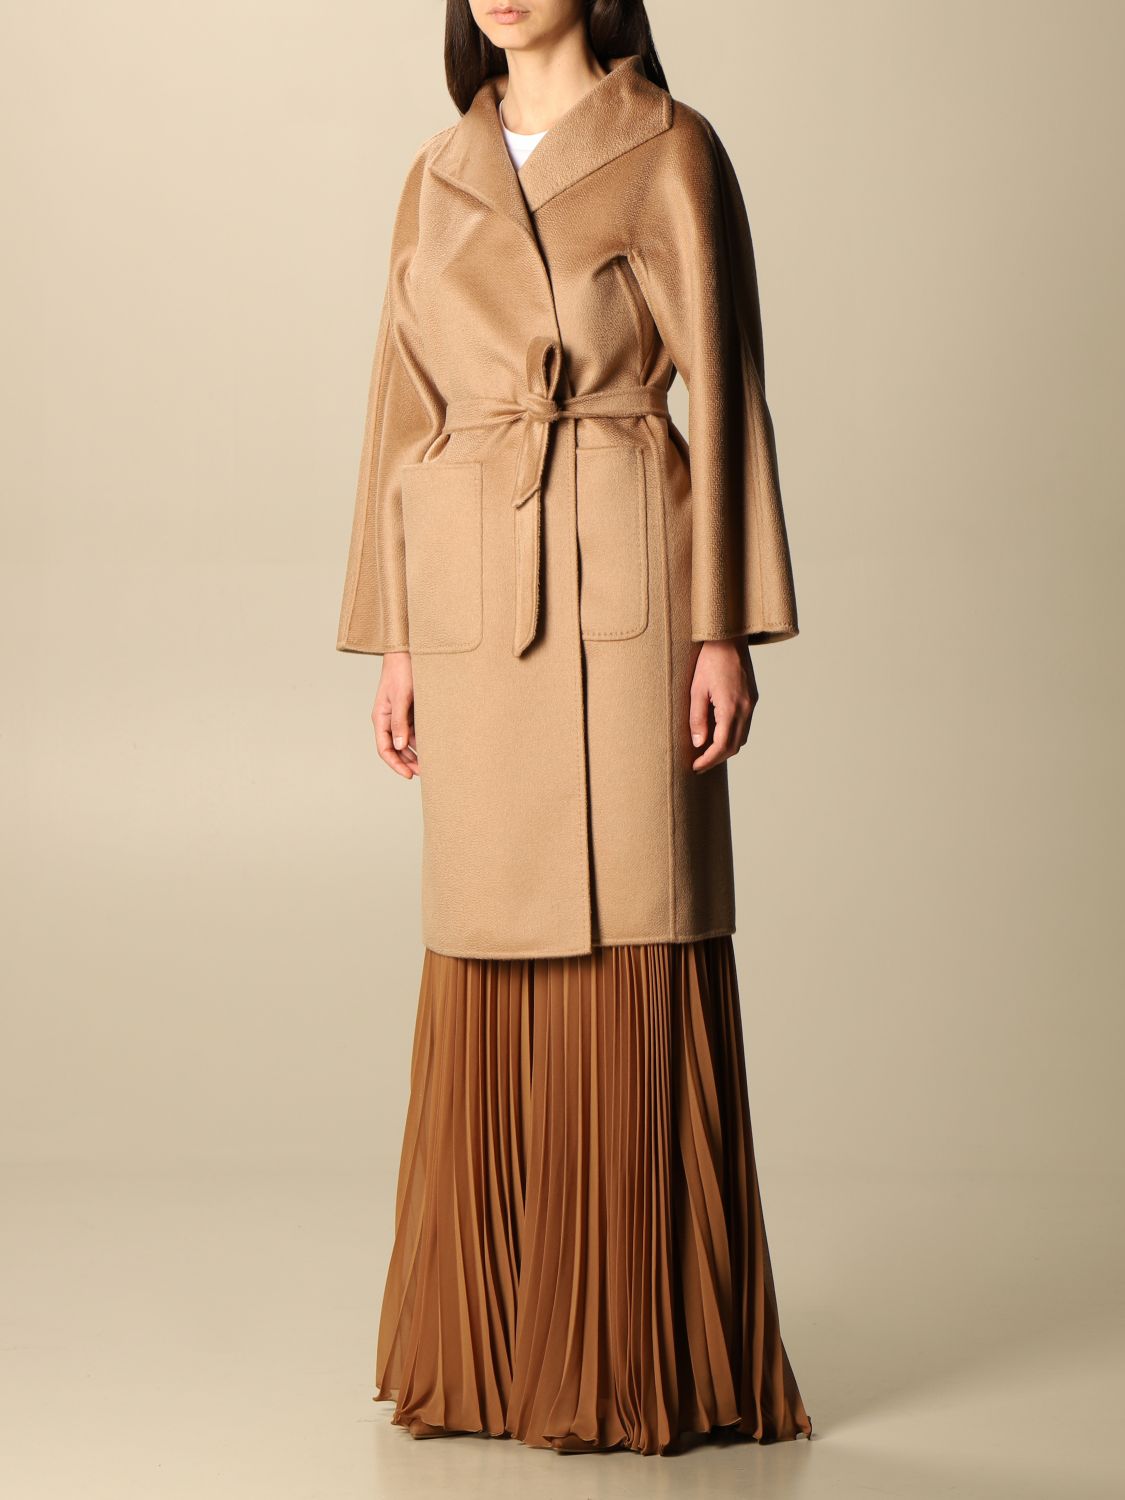 MAX MARA: Lilia cashmere coat - Camel | Coat Max Mara 10110911600 ...